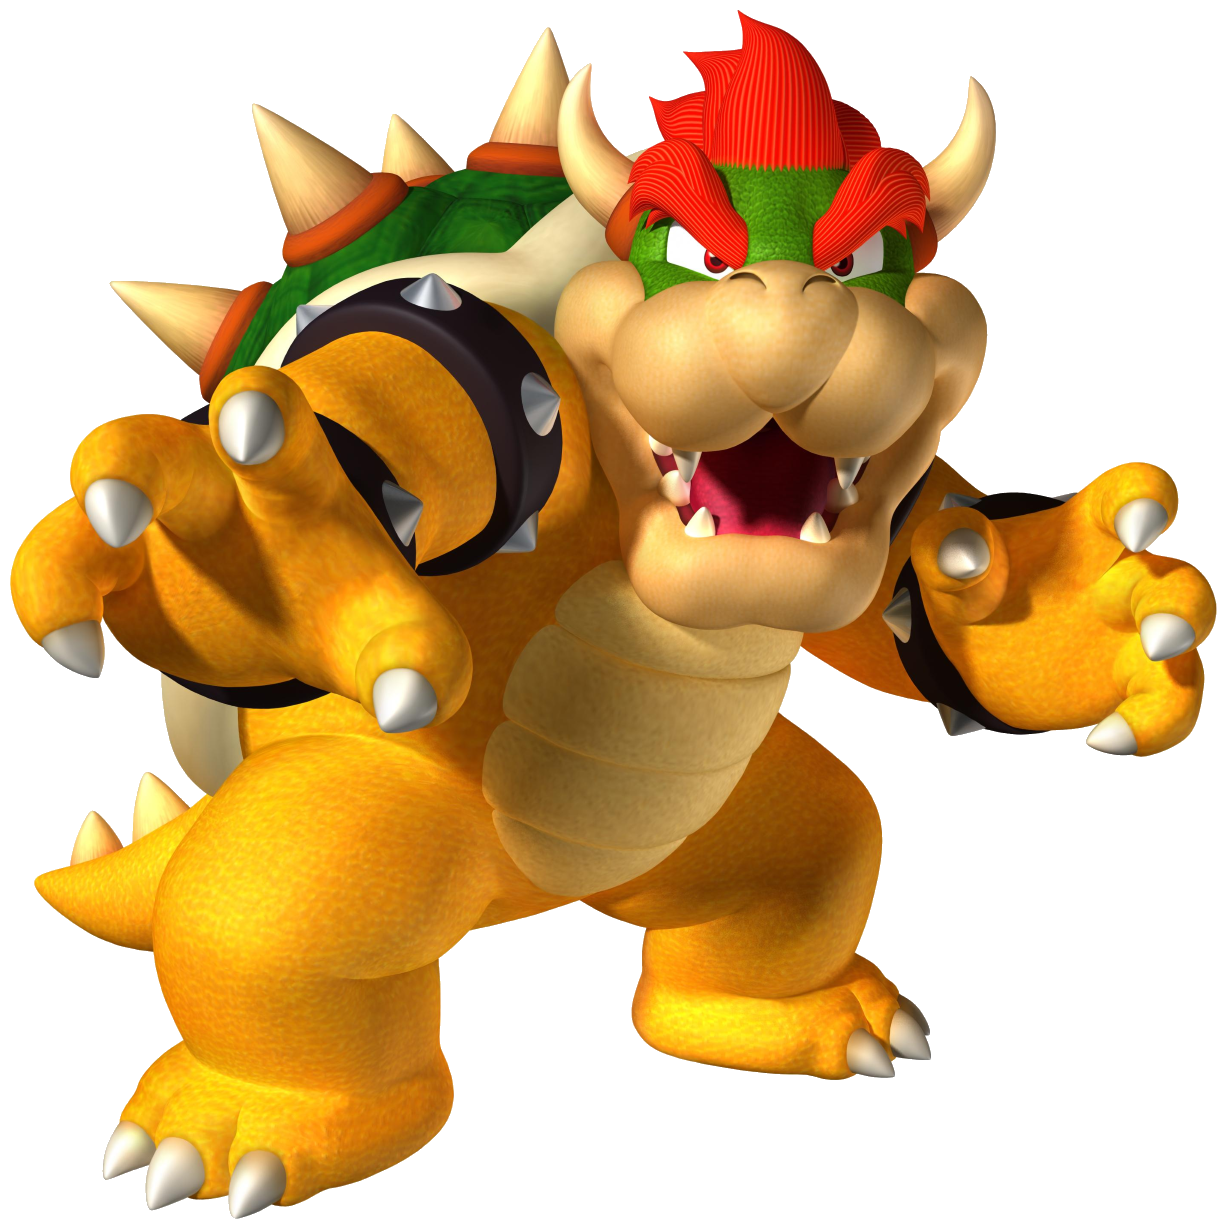 Bowser Super Mario Galaxy Wiki Fandom